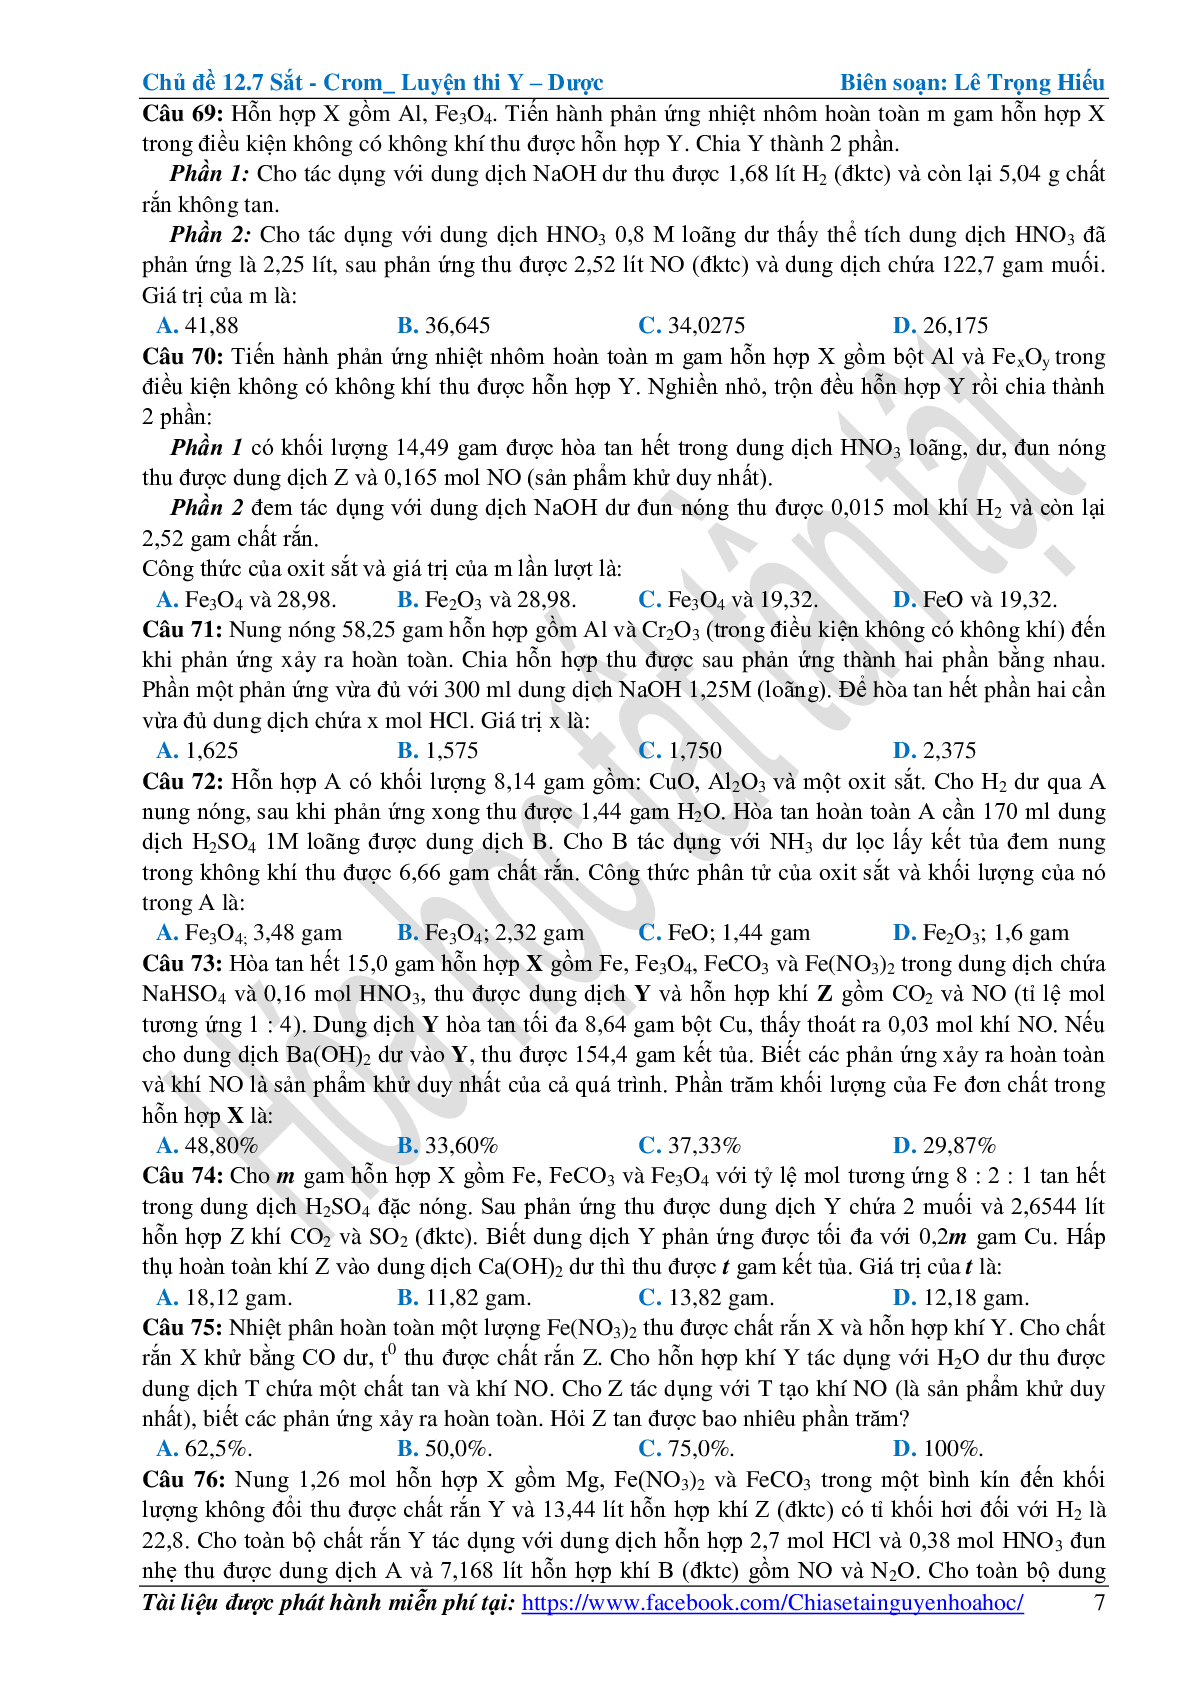 Bài tập về sắt-crom cơ bản, nâng cao (trang 7)